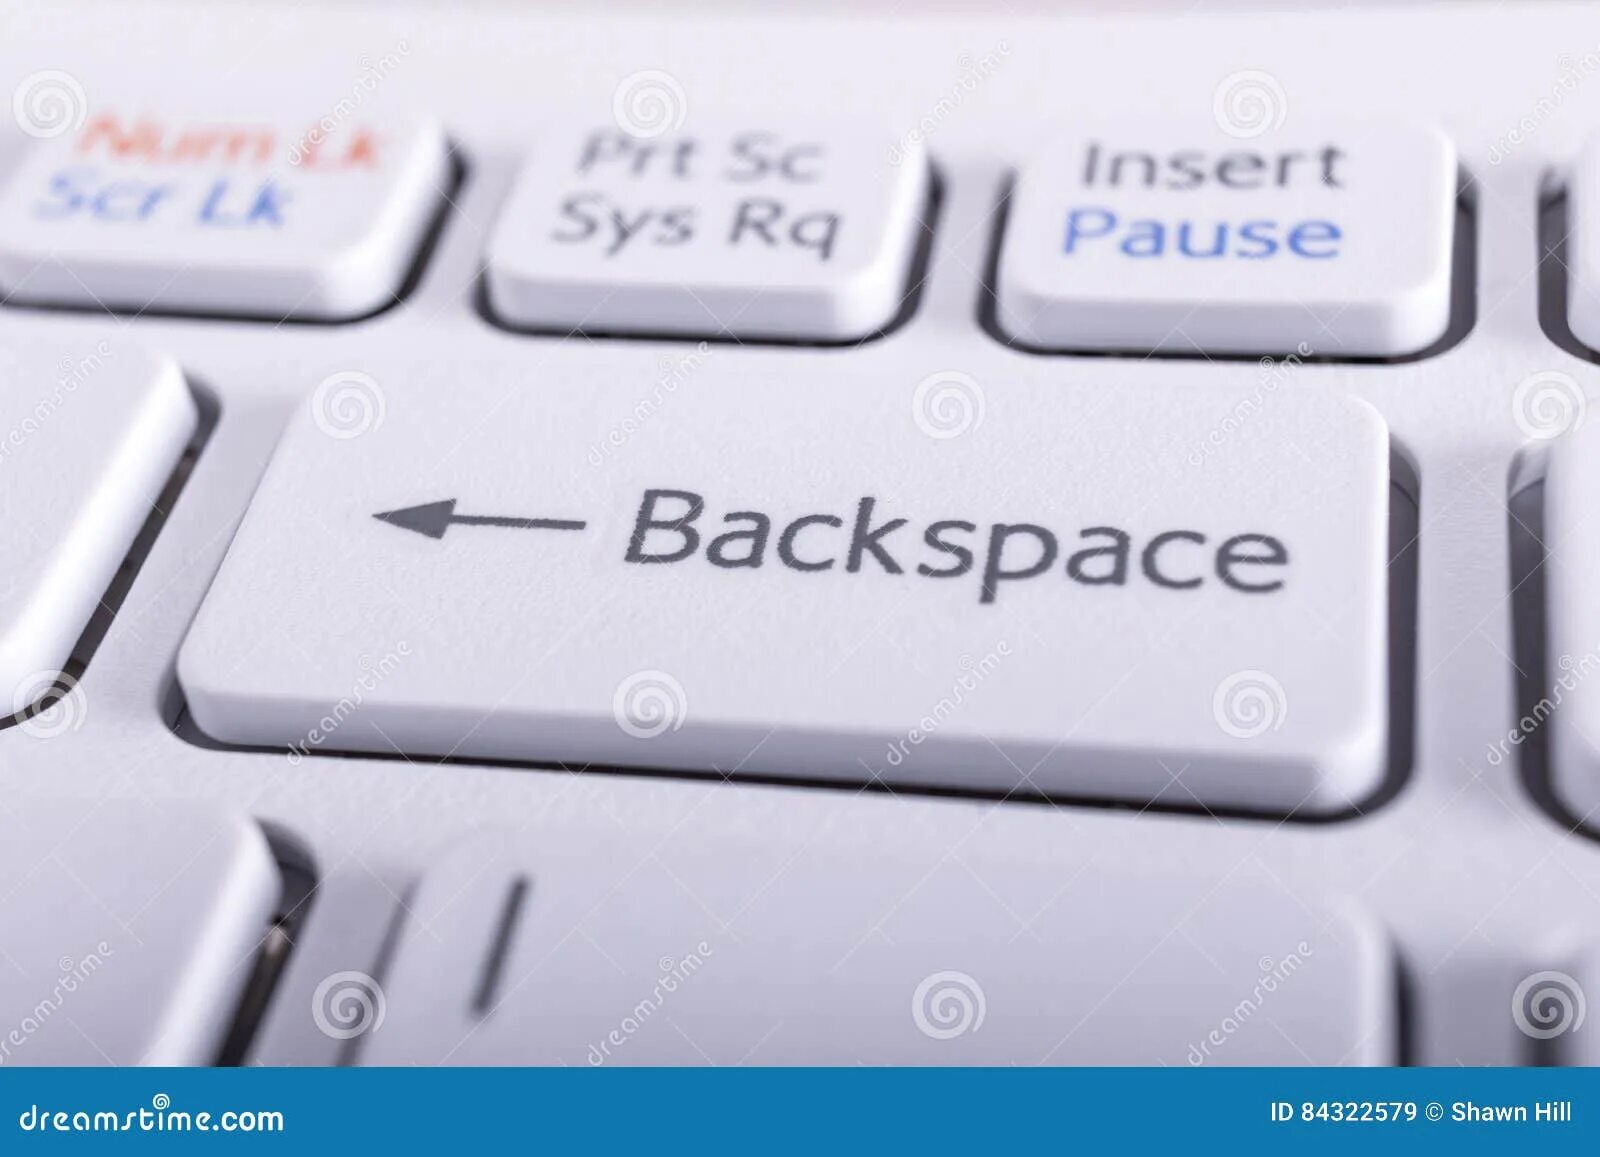 Клавиши бэкспейс на клавиатуре. Кнопка Backspace. Клавиша Backspace на клавиатуре. Кнопка бекспейс на клавиатуре.